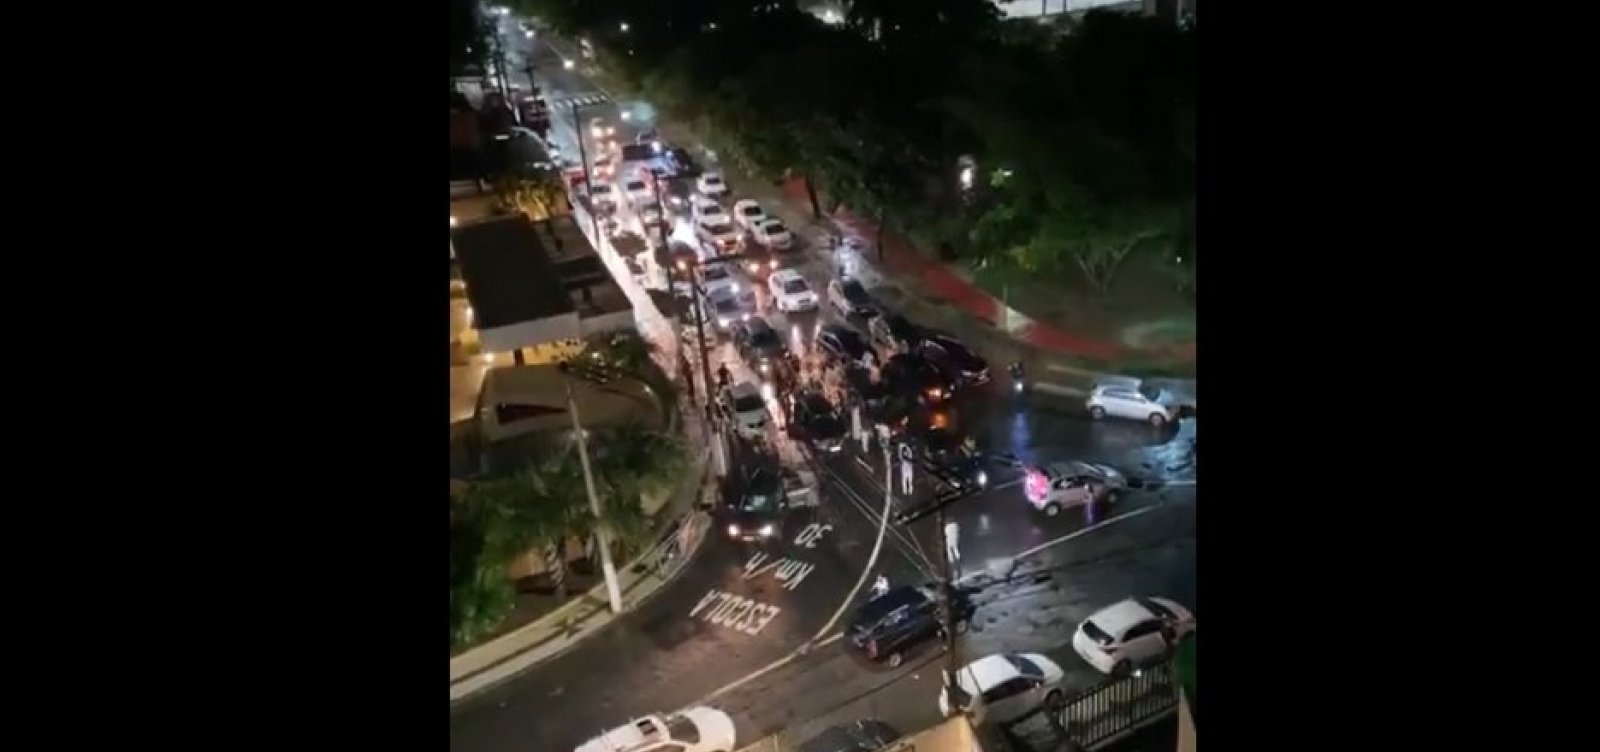 [Grupo bloqueia rua na Pituba e cria aglomeração para comemorar aniversário de 15 anos; veja vídeo]